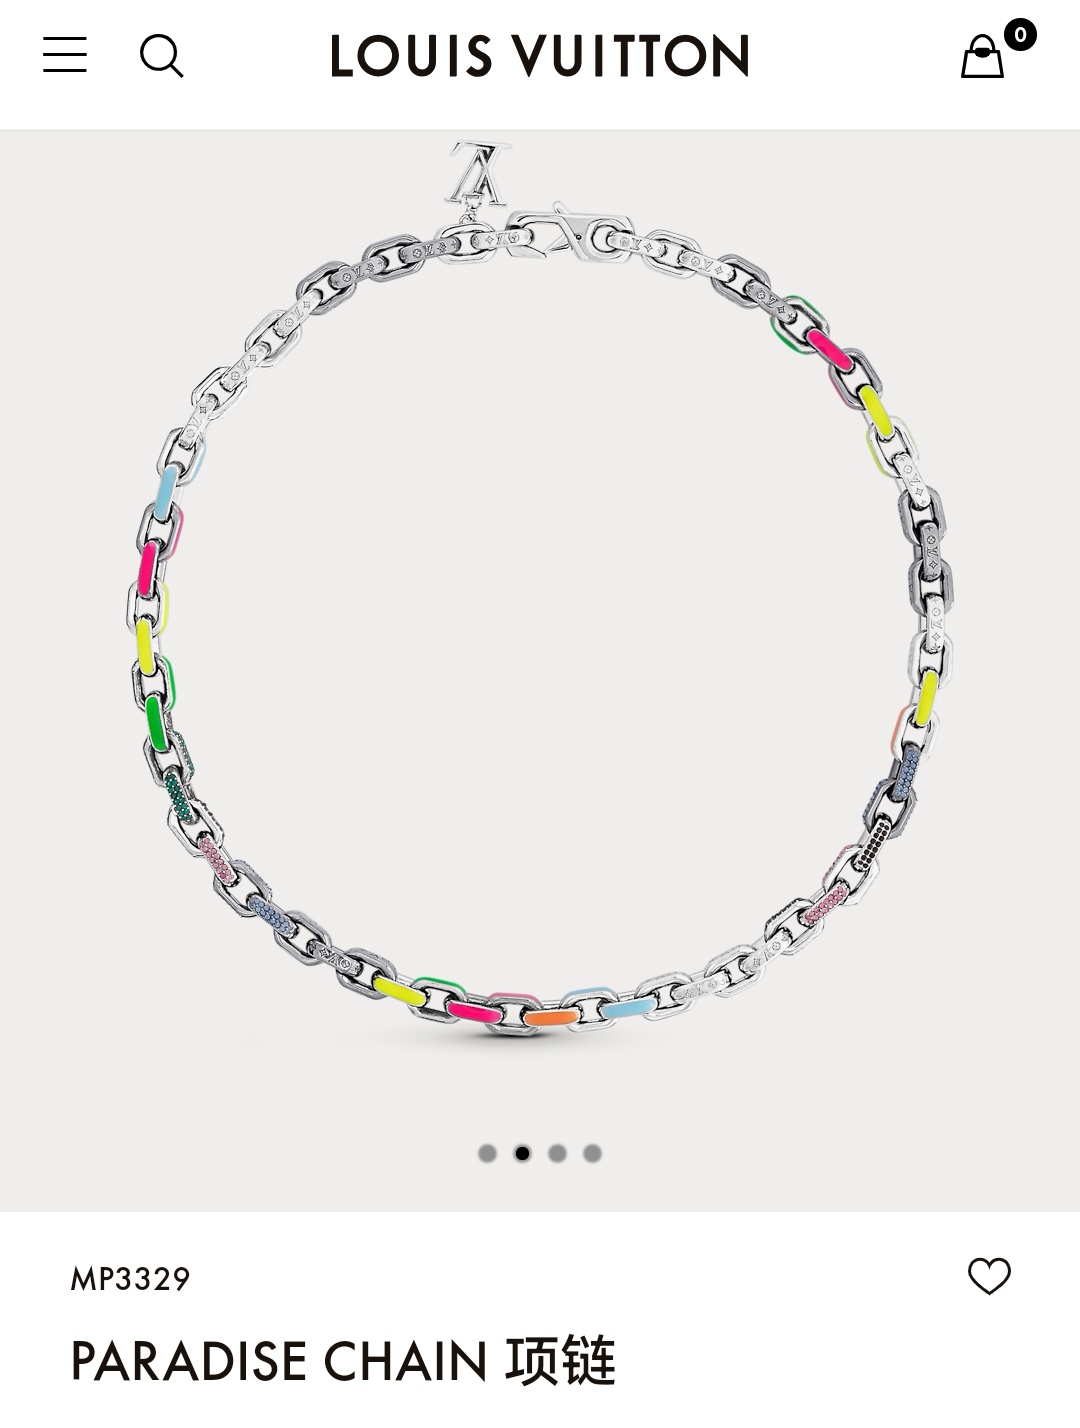 LV necklace bracelet